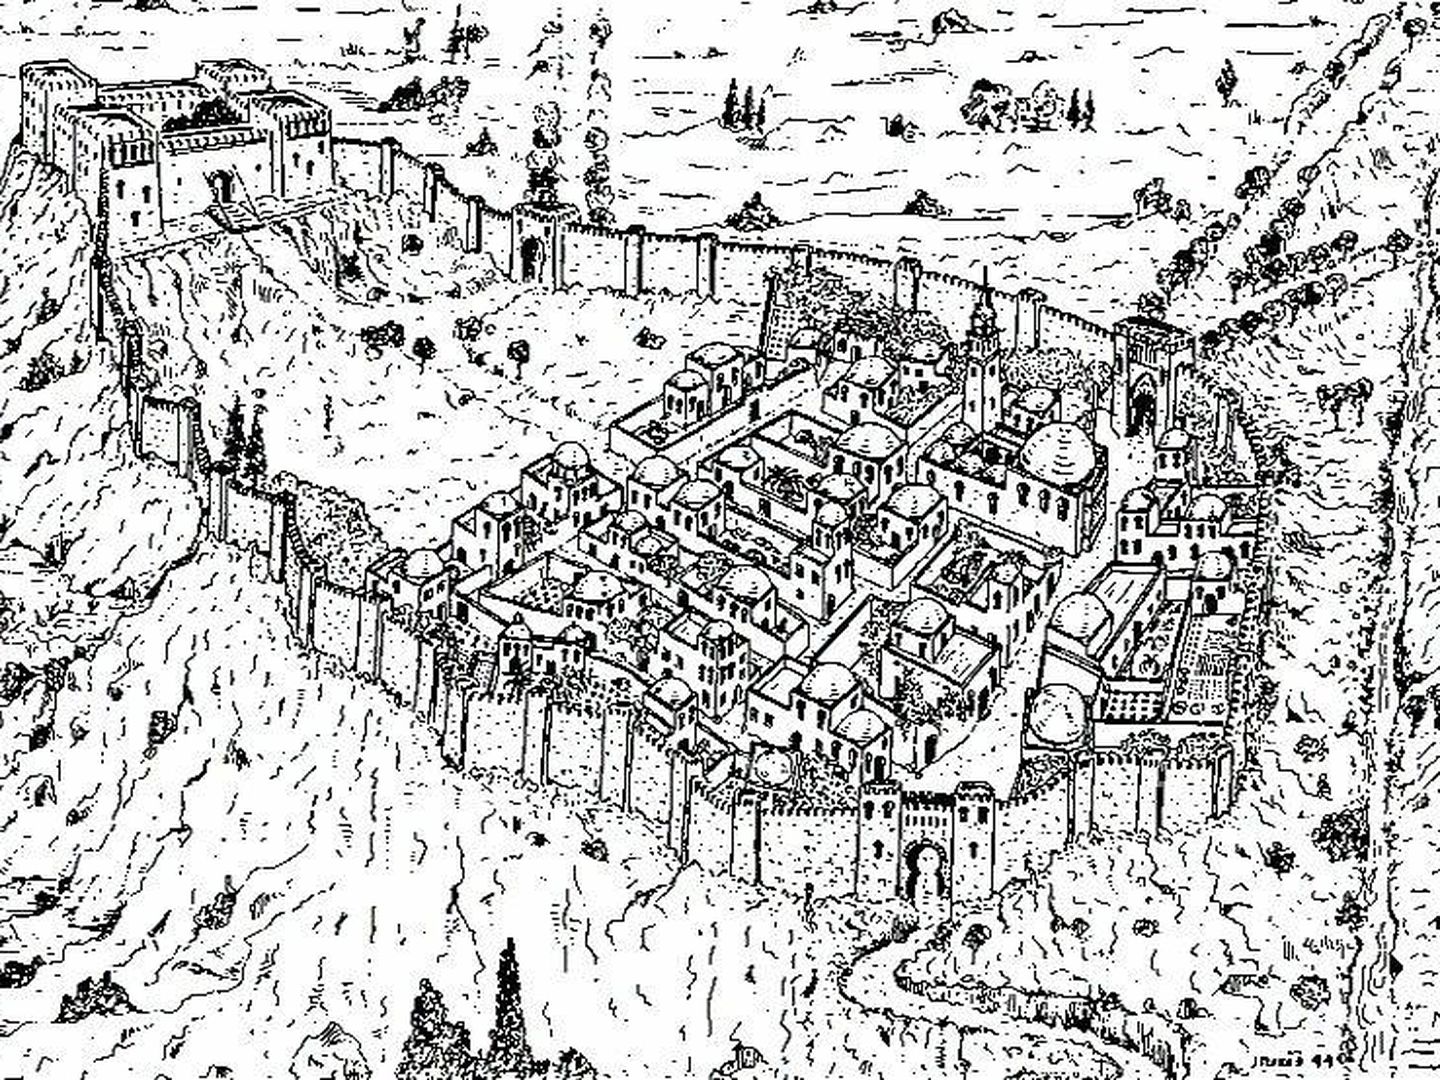 Ciudad fortificada de Mayrit en el s. X